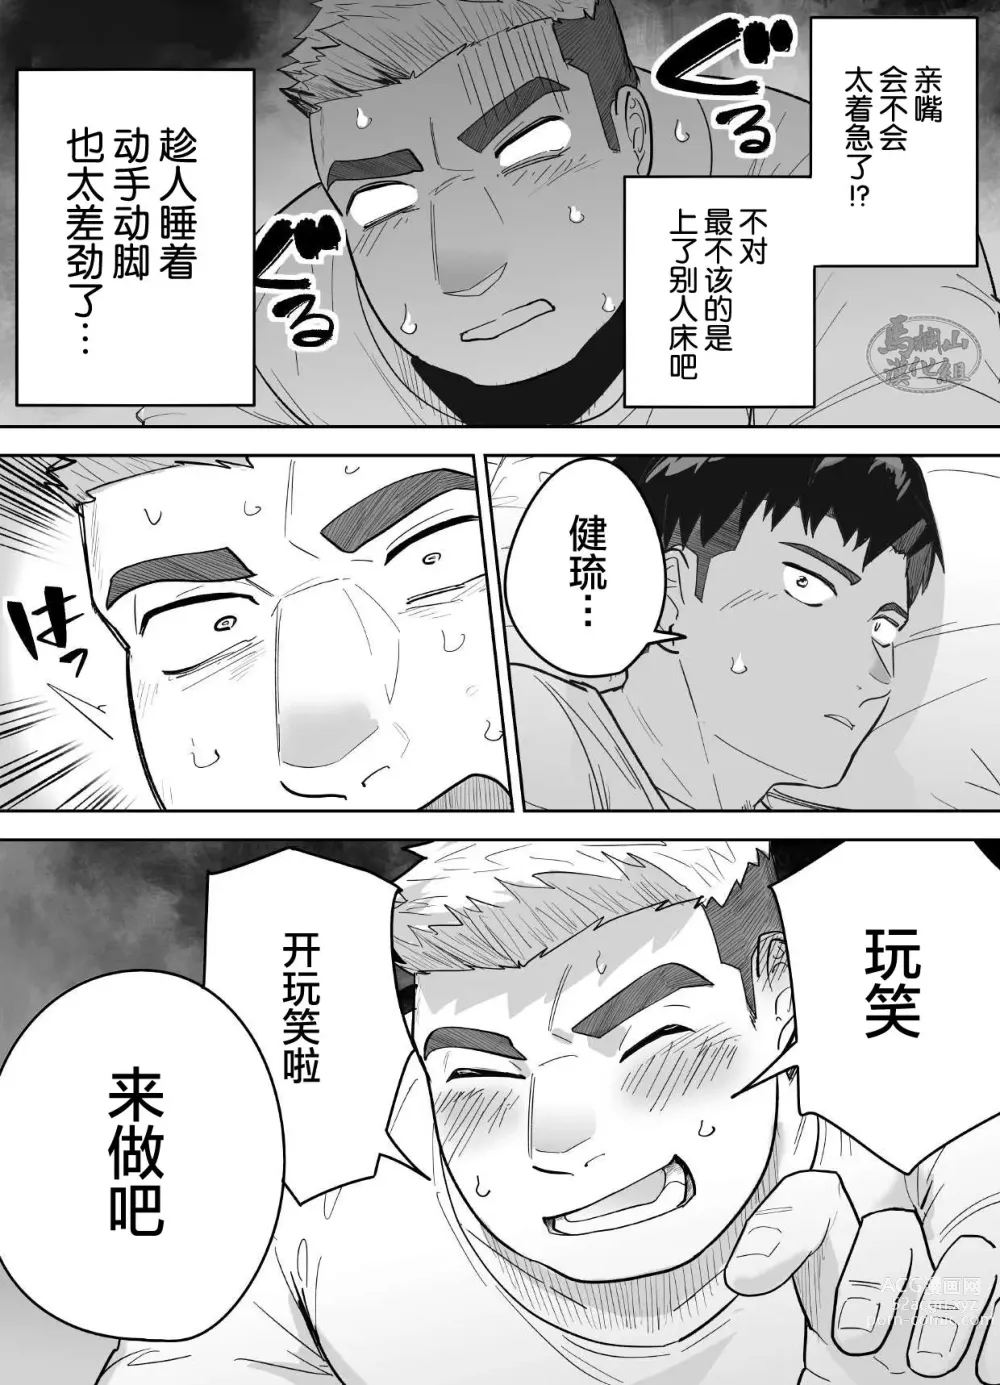 Page 10 of manga 片思いしてるガチムチ同級生に襲われる話